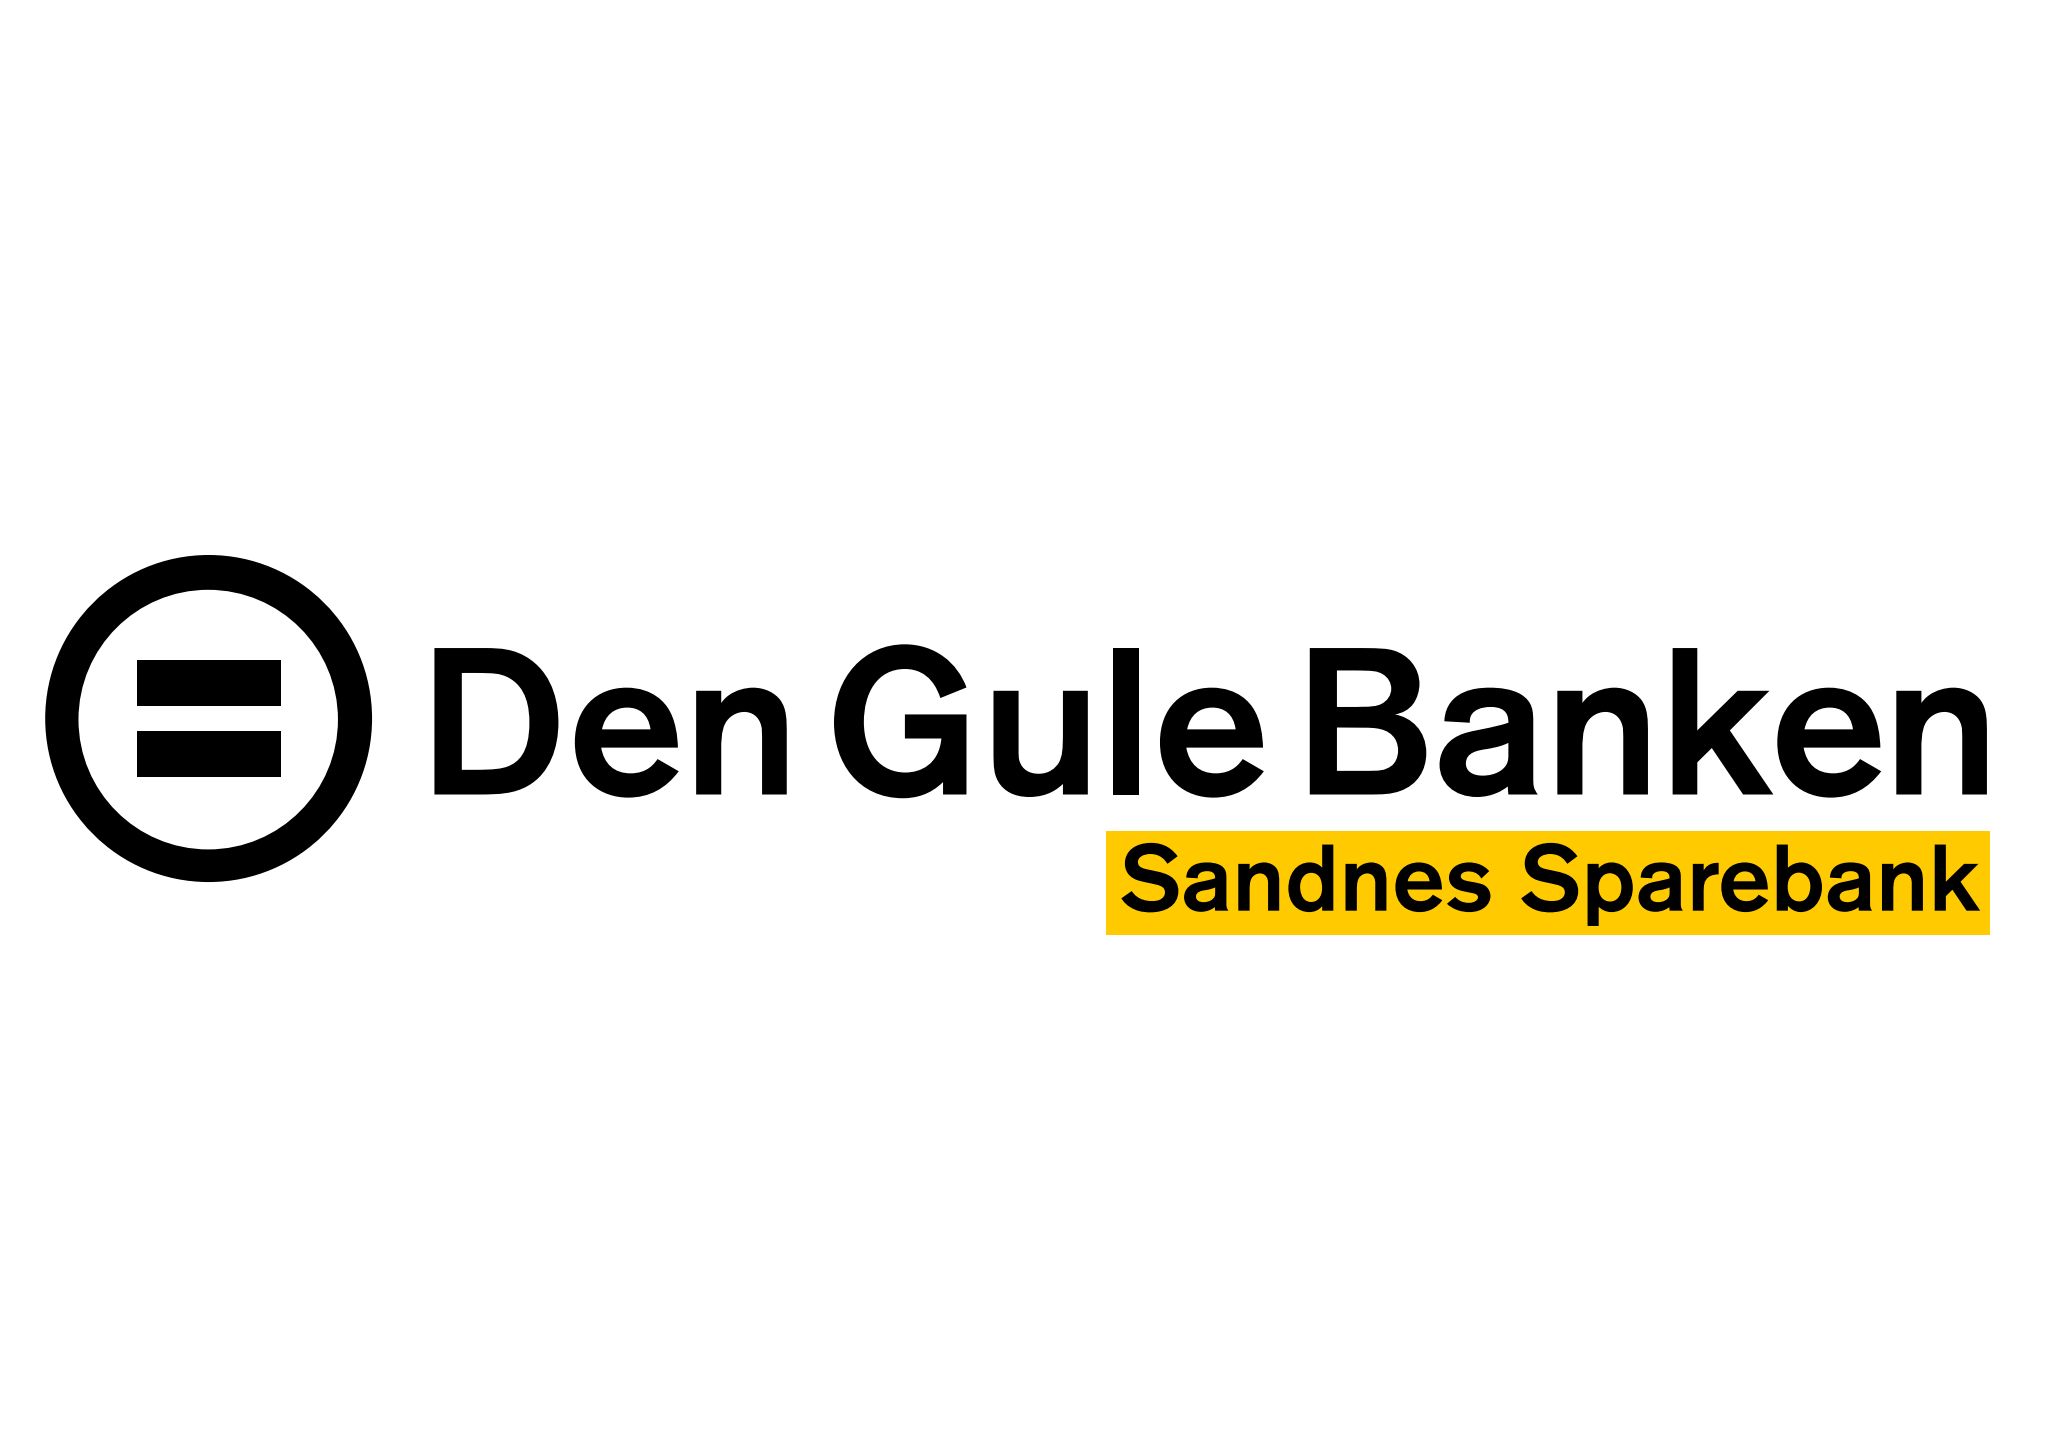 dgb-logo-med-gul-underboks-page-1